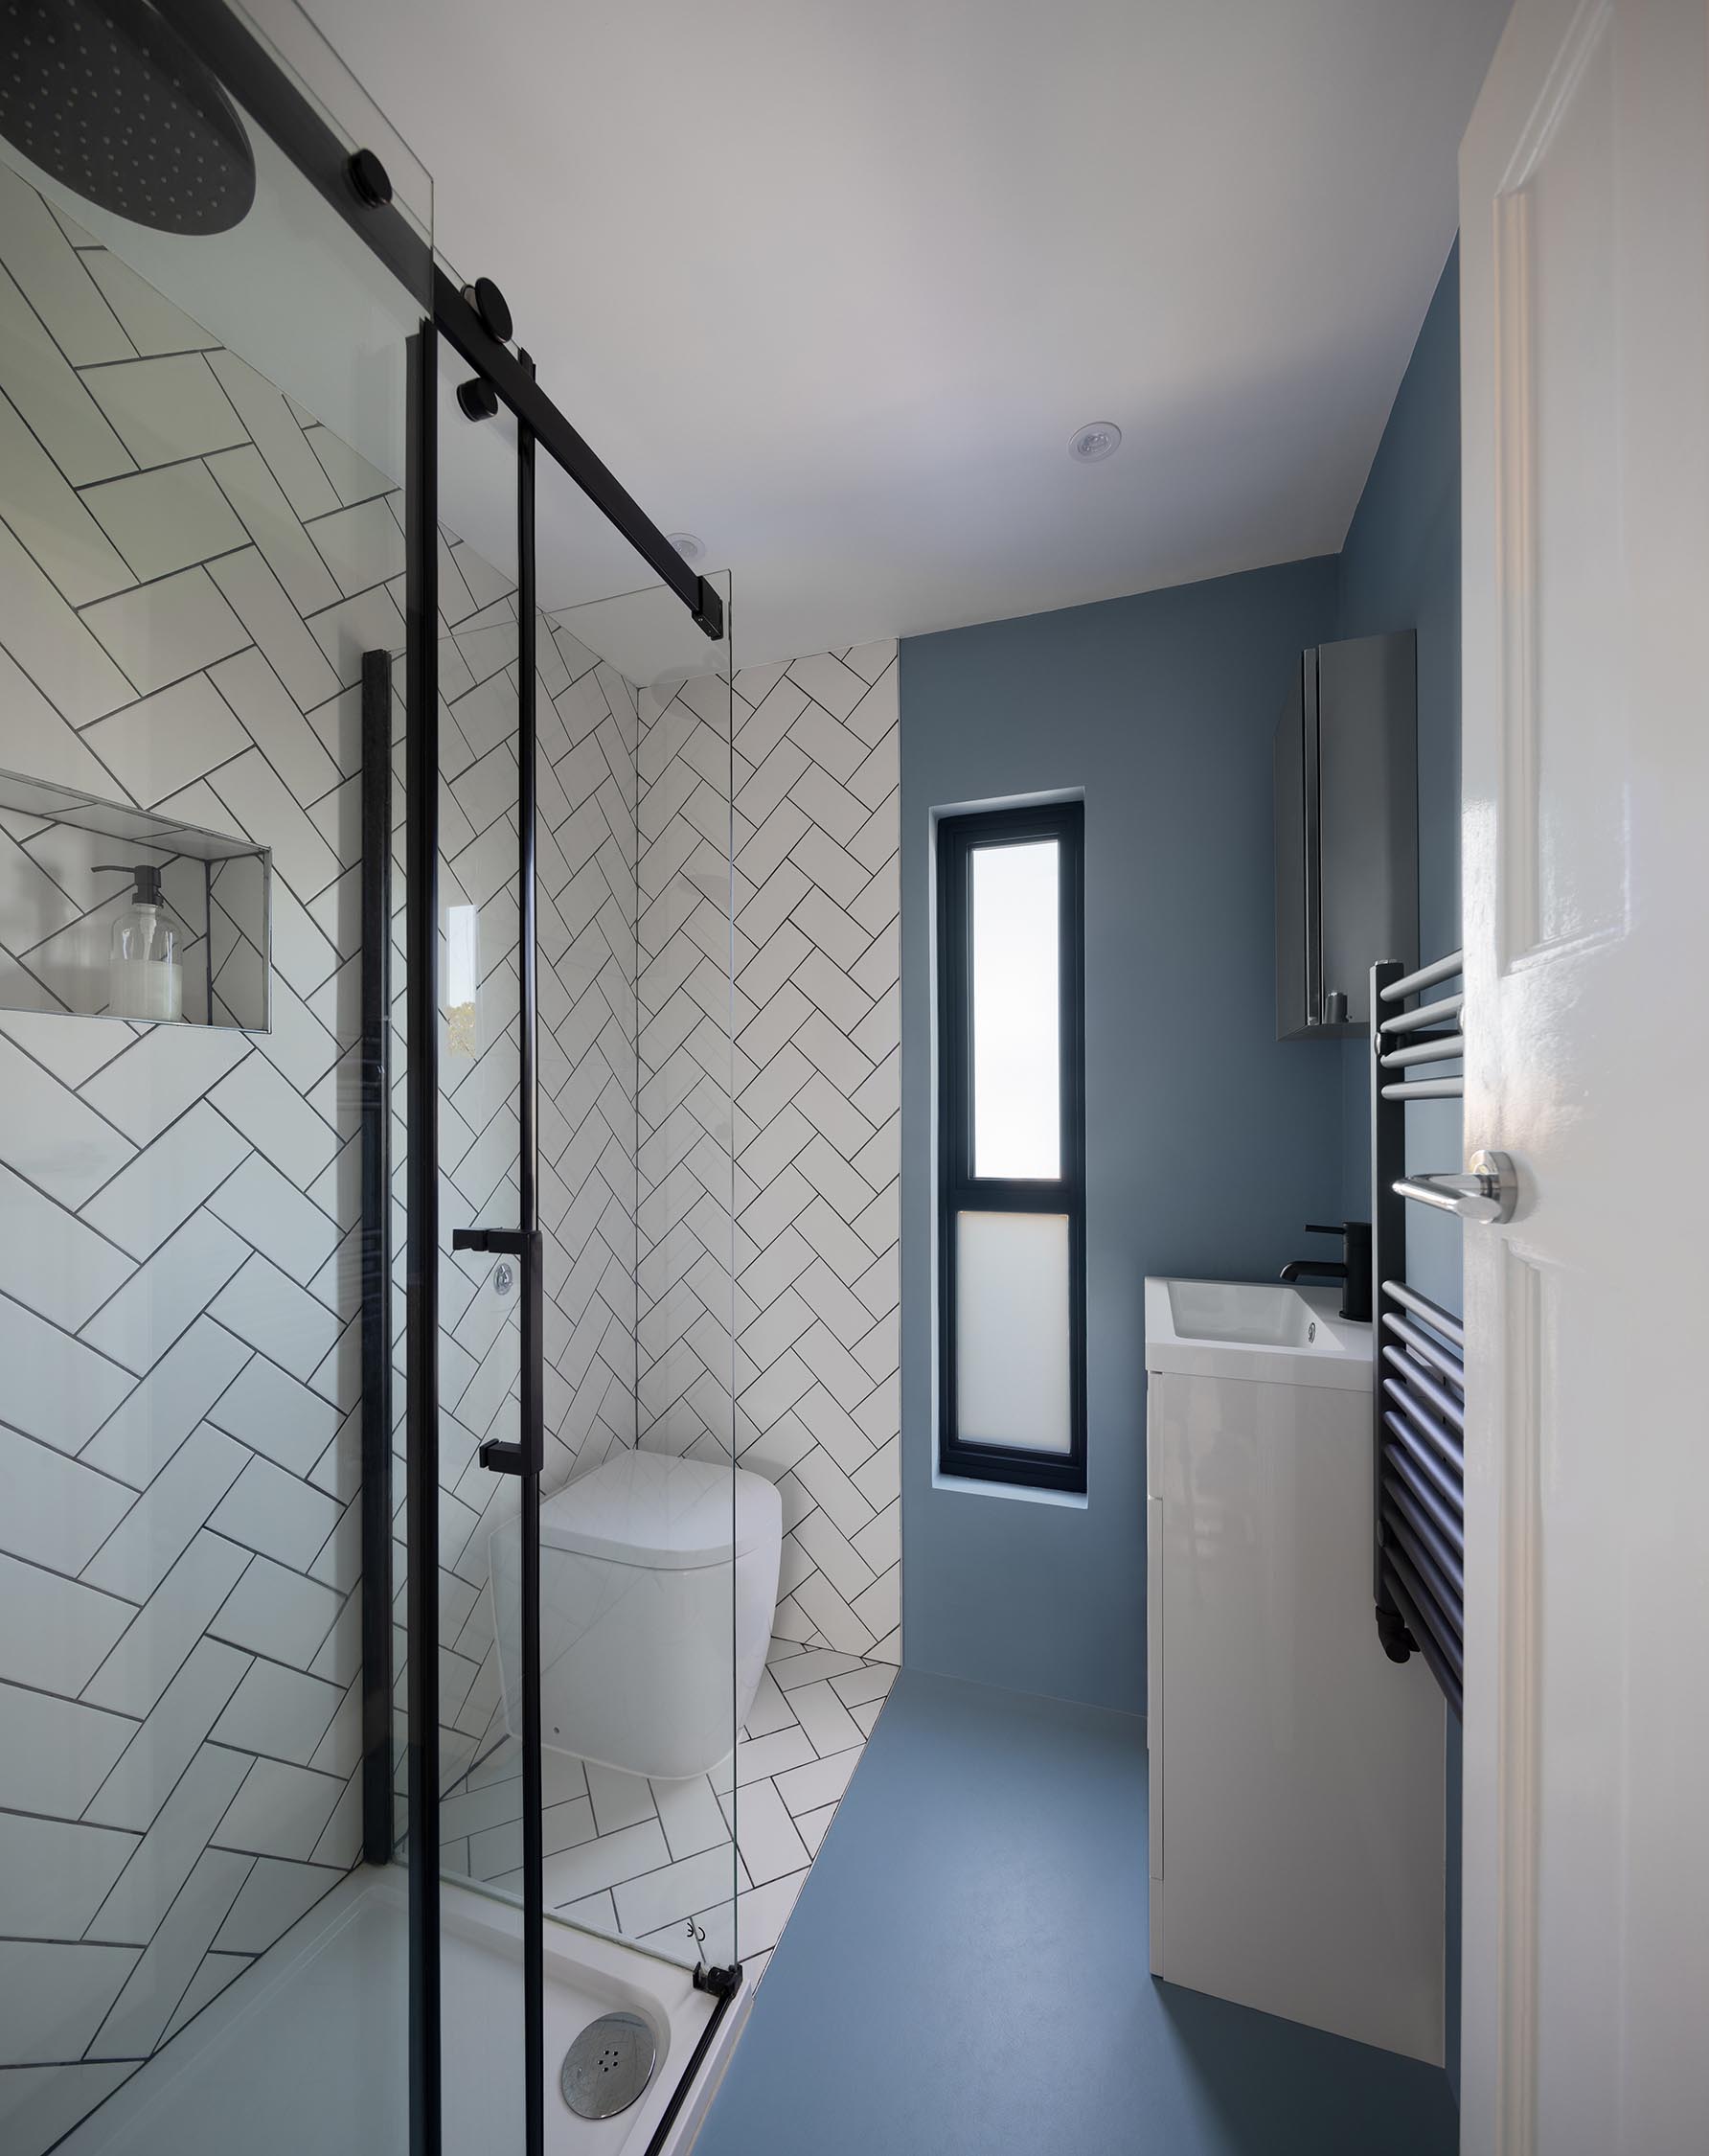 Современная ванная комната с белой плиткой в ​​елочку, черной фурнитурой и узким туалетным столиком.